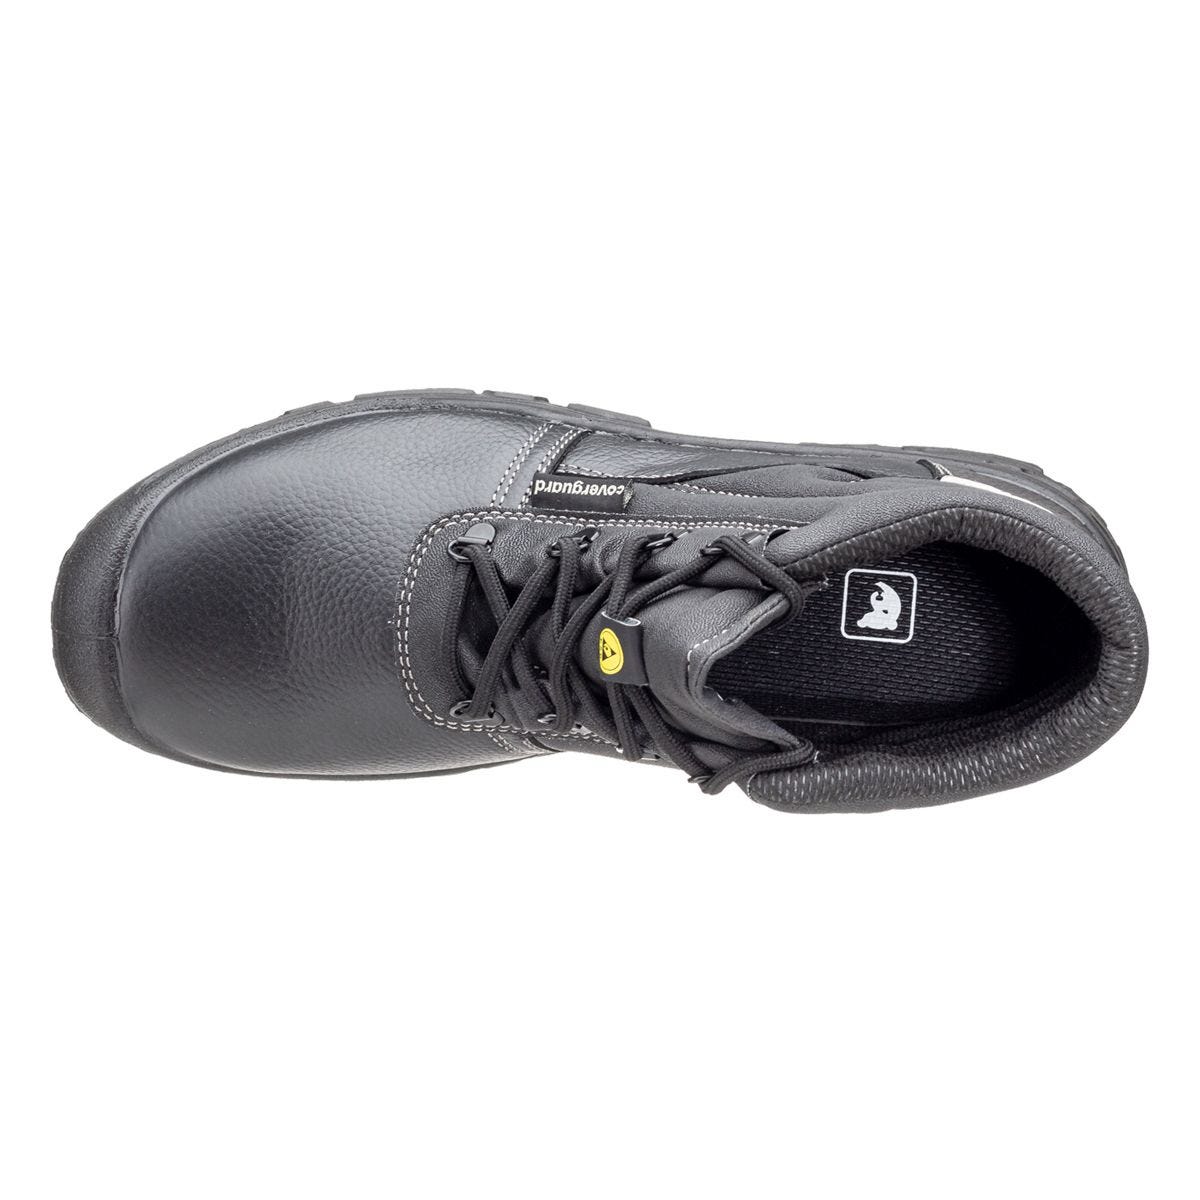 Chaussures de sécurité hautes Azurite II S3 ESD noir - Coverguard - Taille 43 3